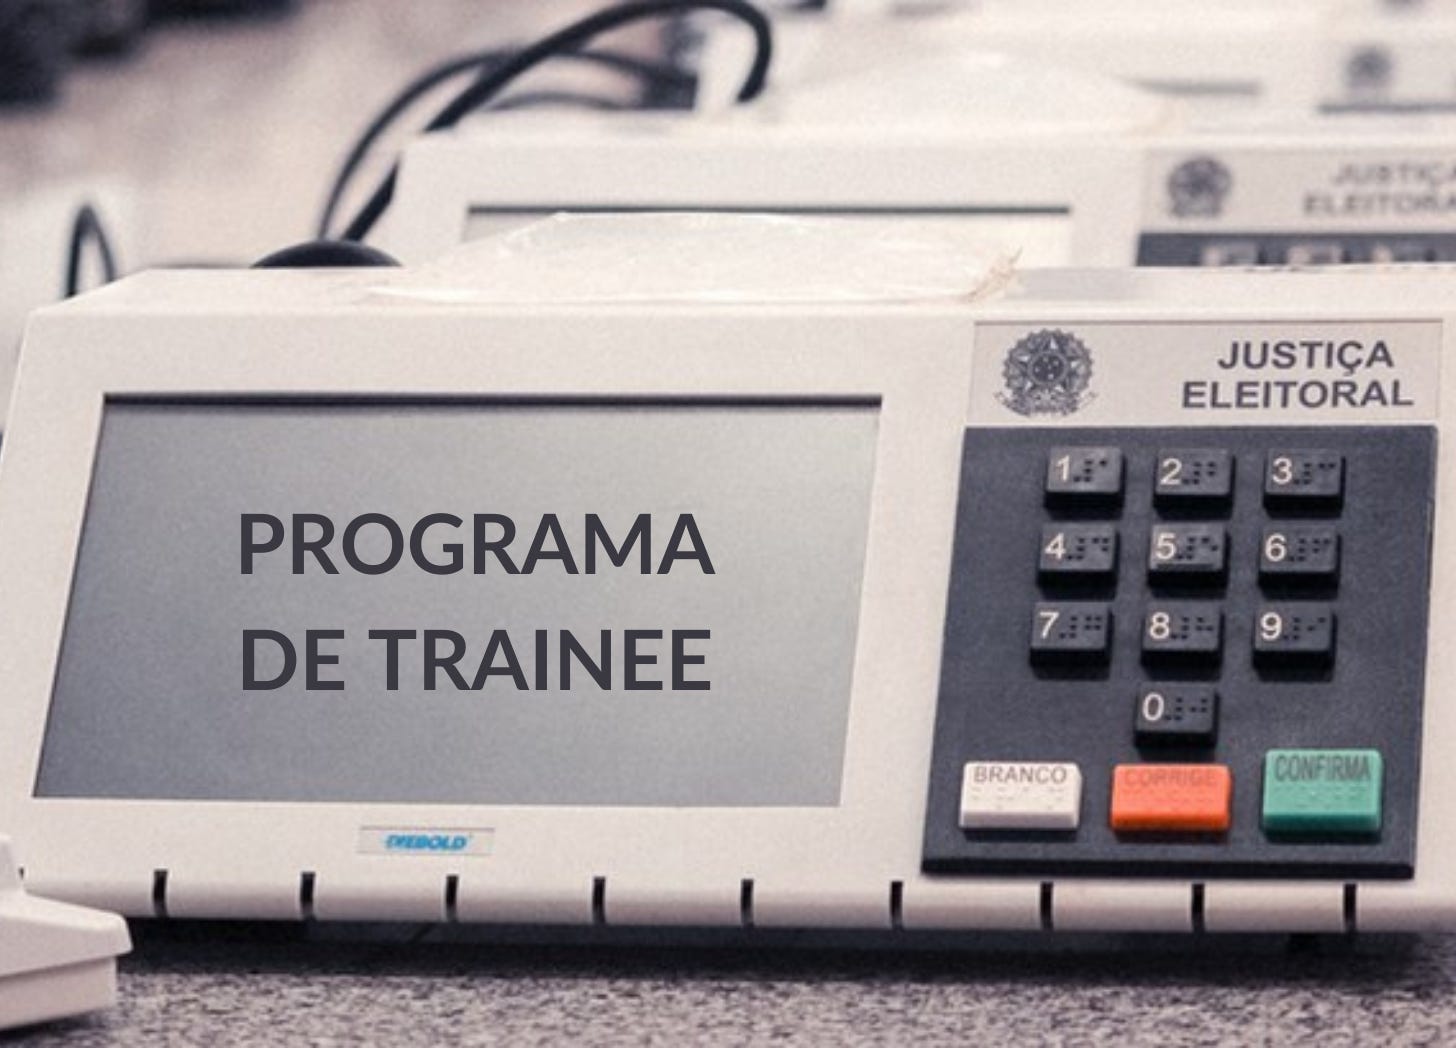 Urna eletrônica onde na tela está escrito “Programa de Trainee”.